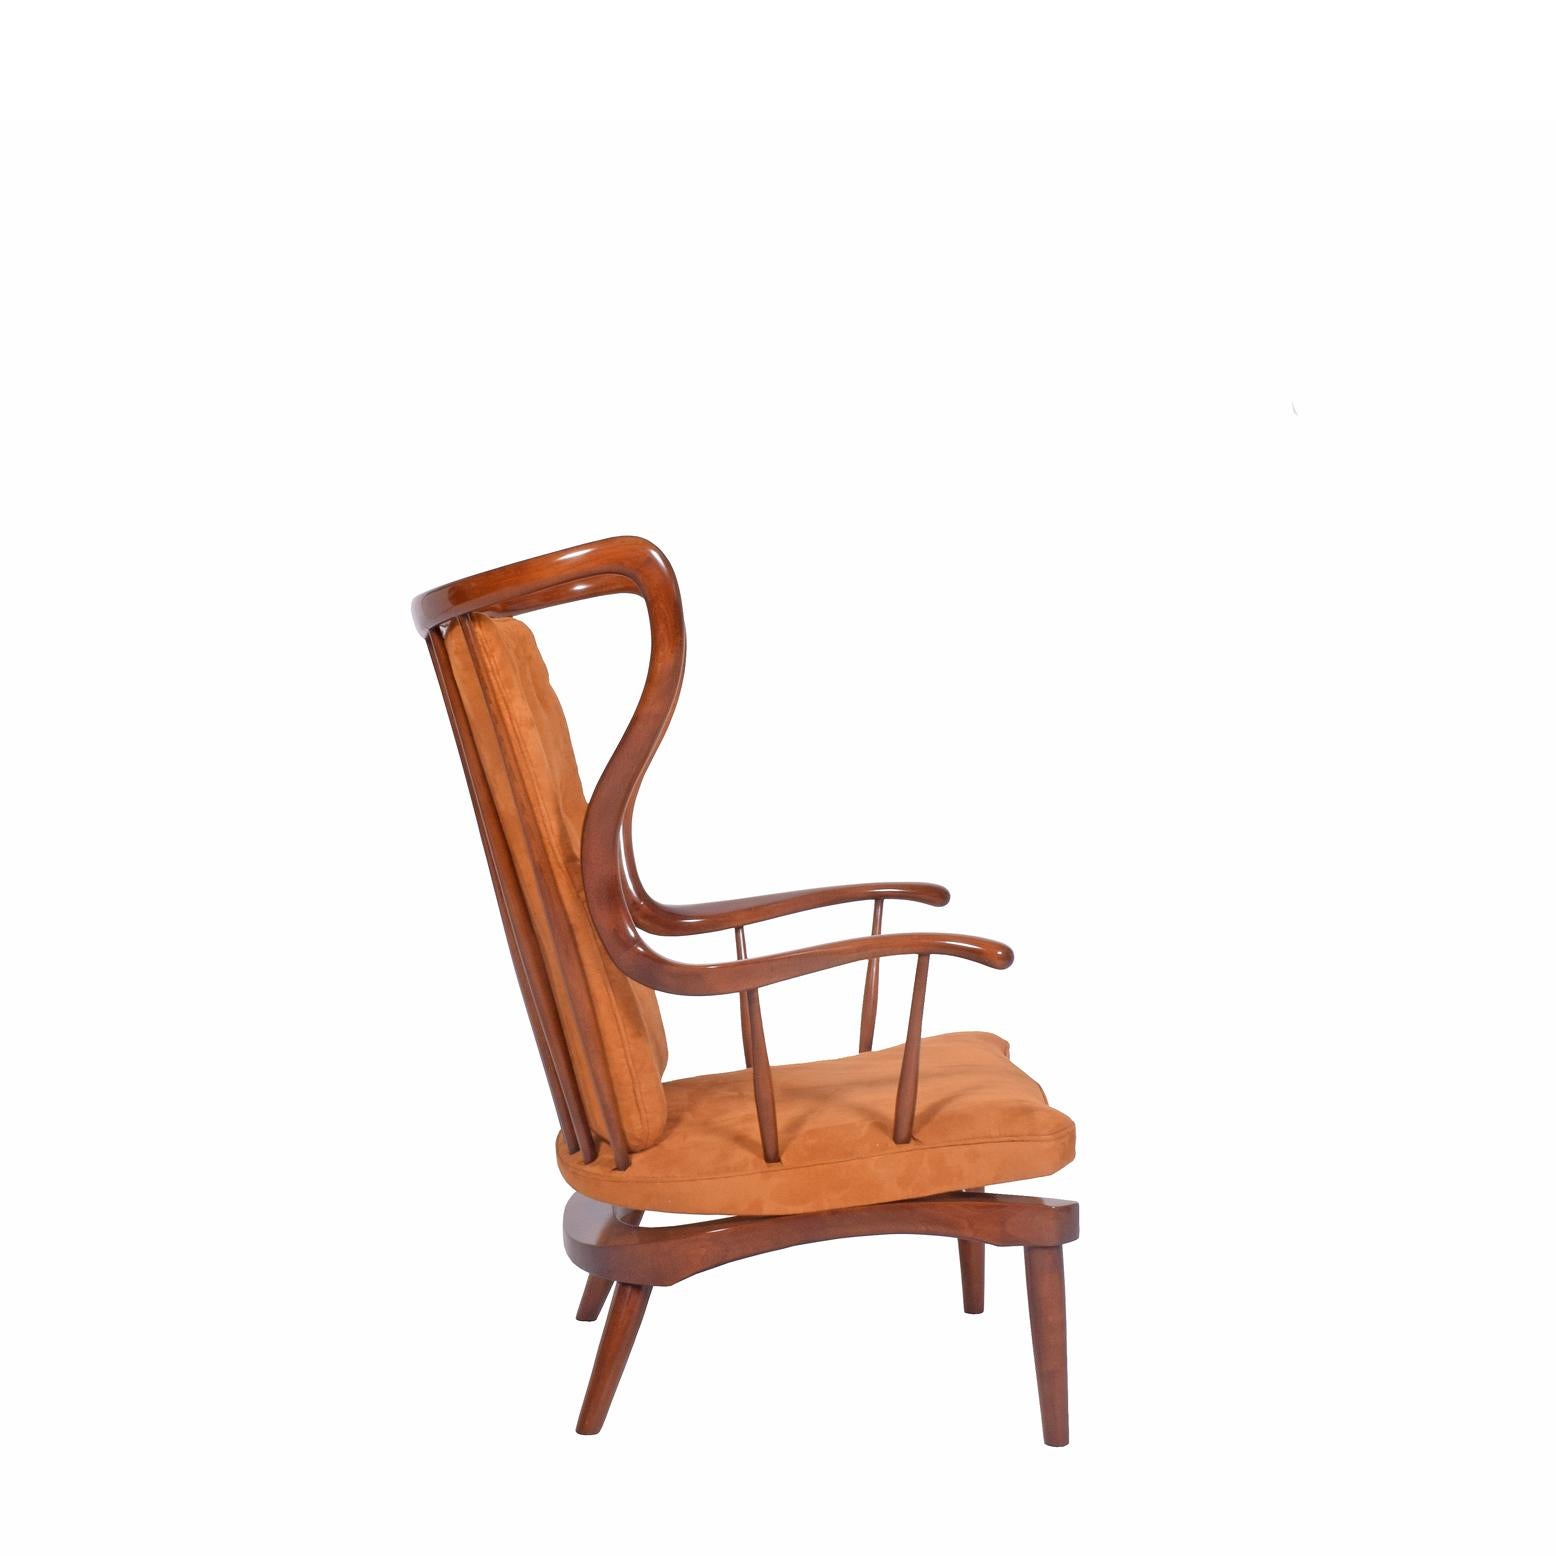 Scandinavian Modern Danish Architect Designed Sculptural Rocking Chair